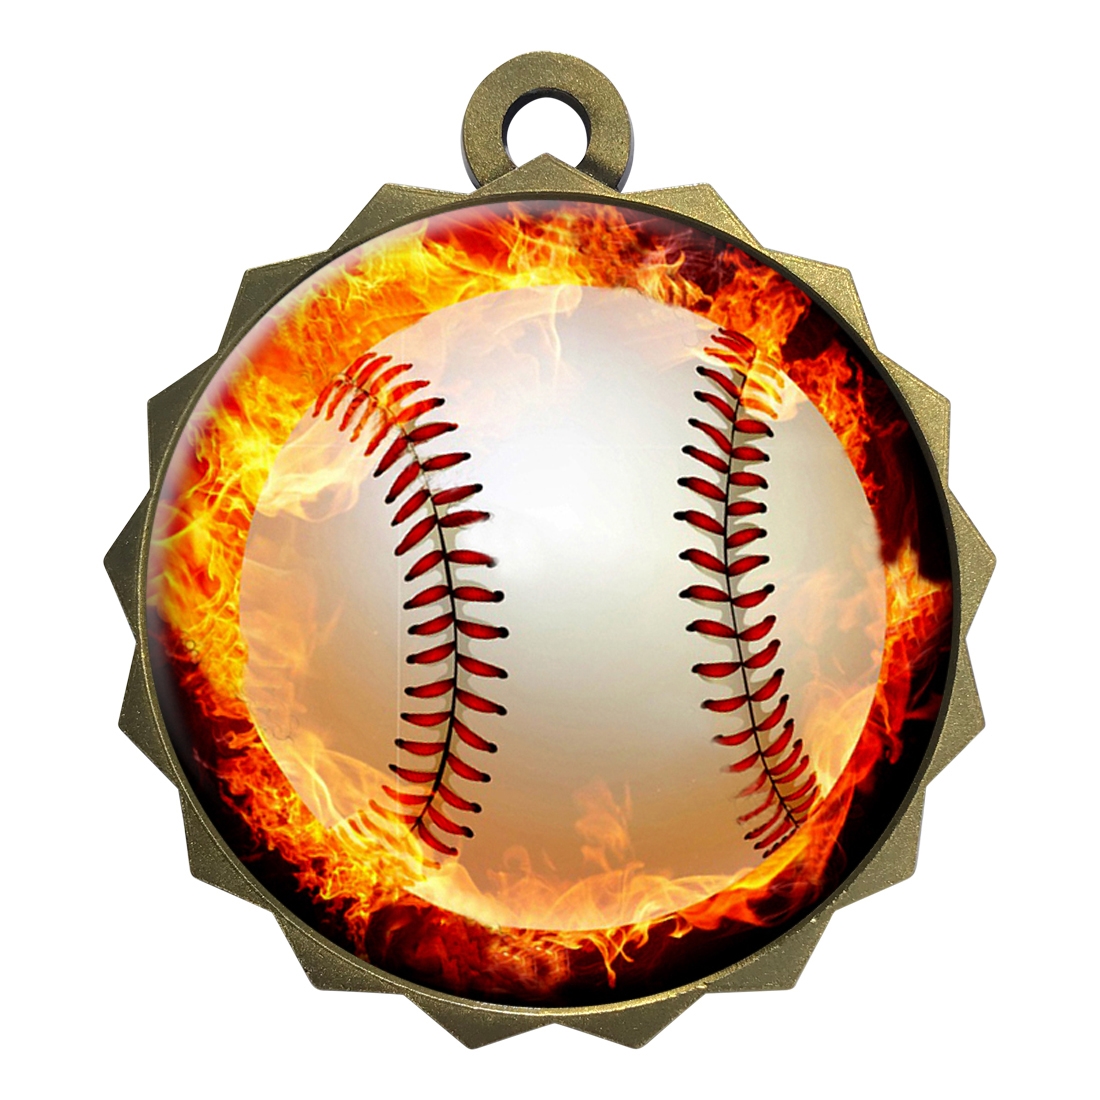 2-1/4" Baseball Medal